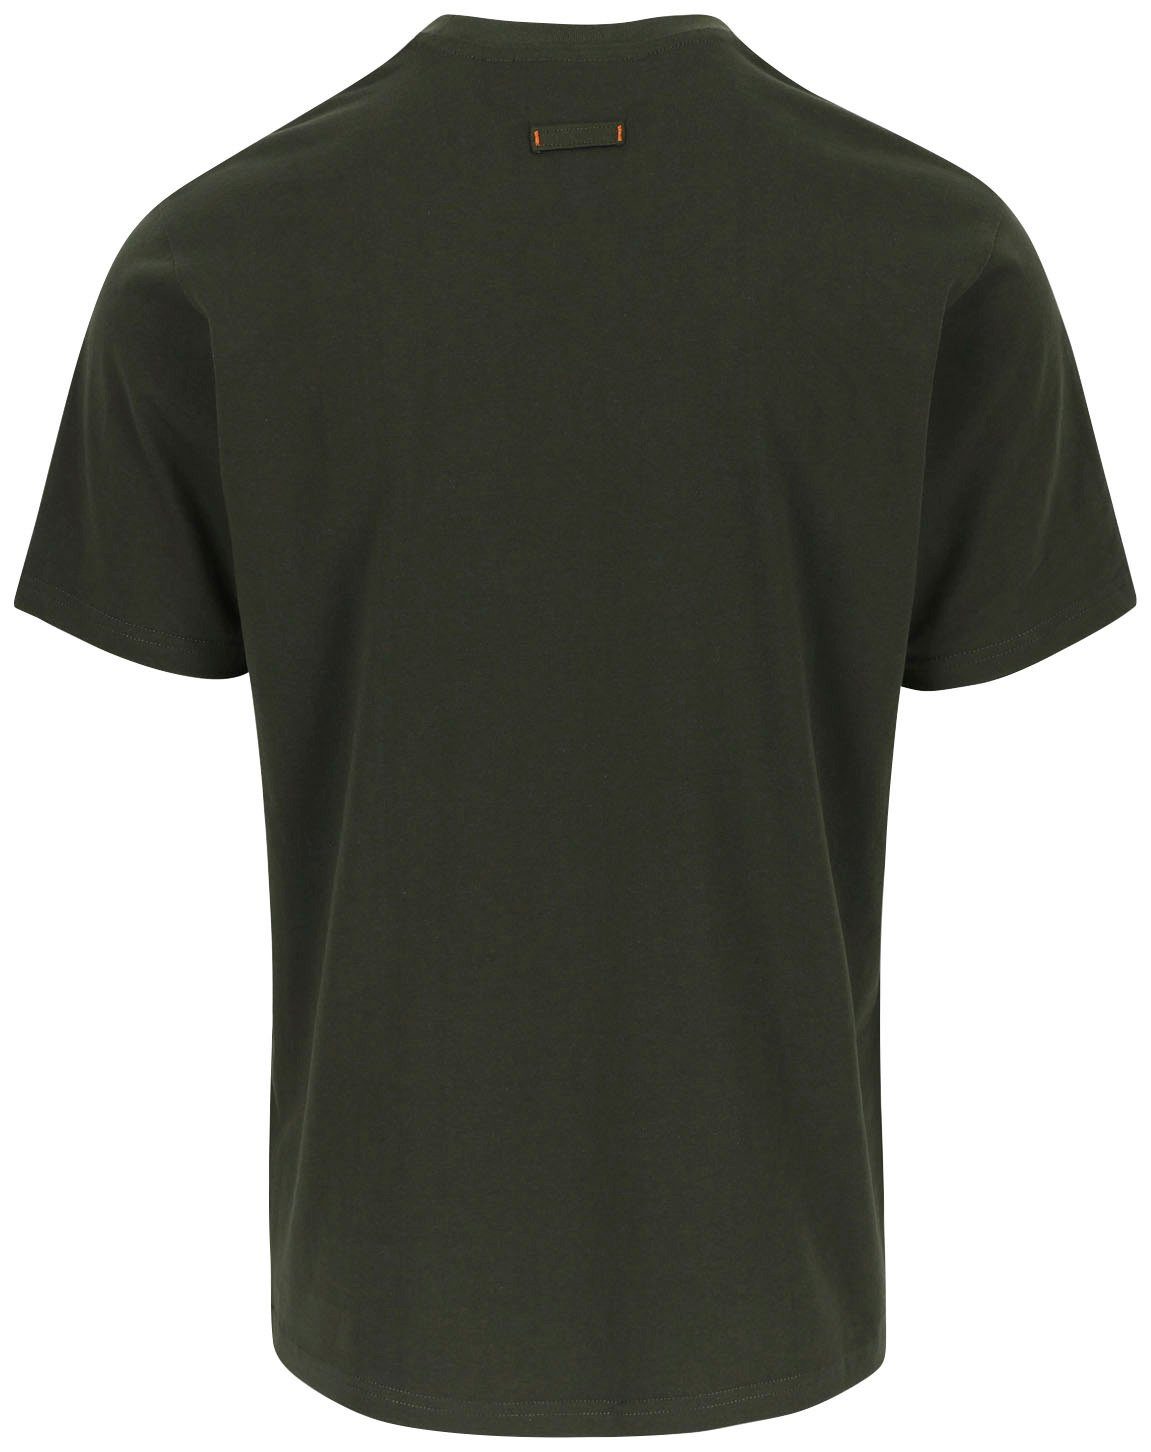 Tragegefühl T-Shirt ENI khaki mit angenehmes Rundhals, Baumwolle, Herock Herock®-Aufdruck,